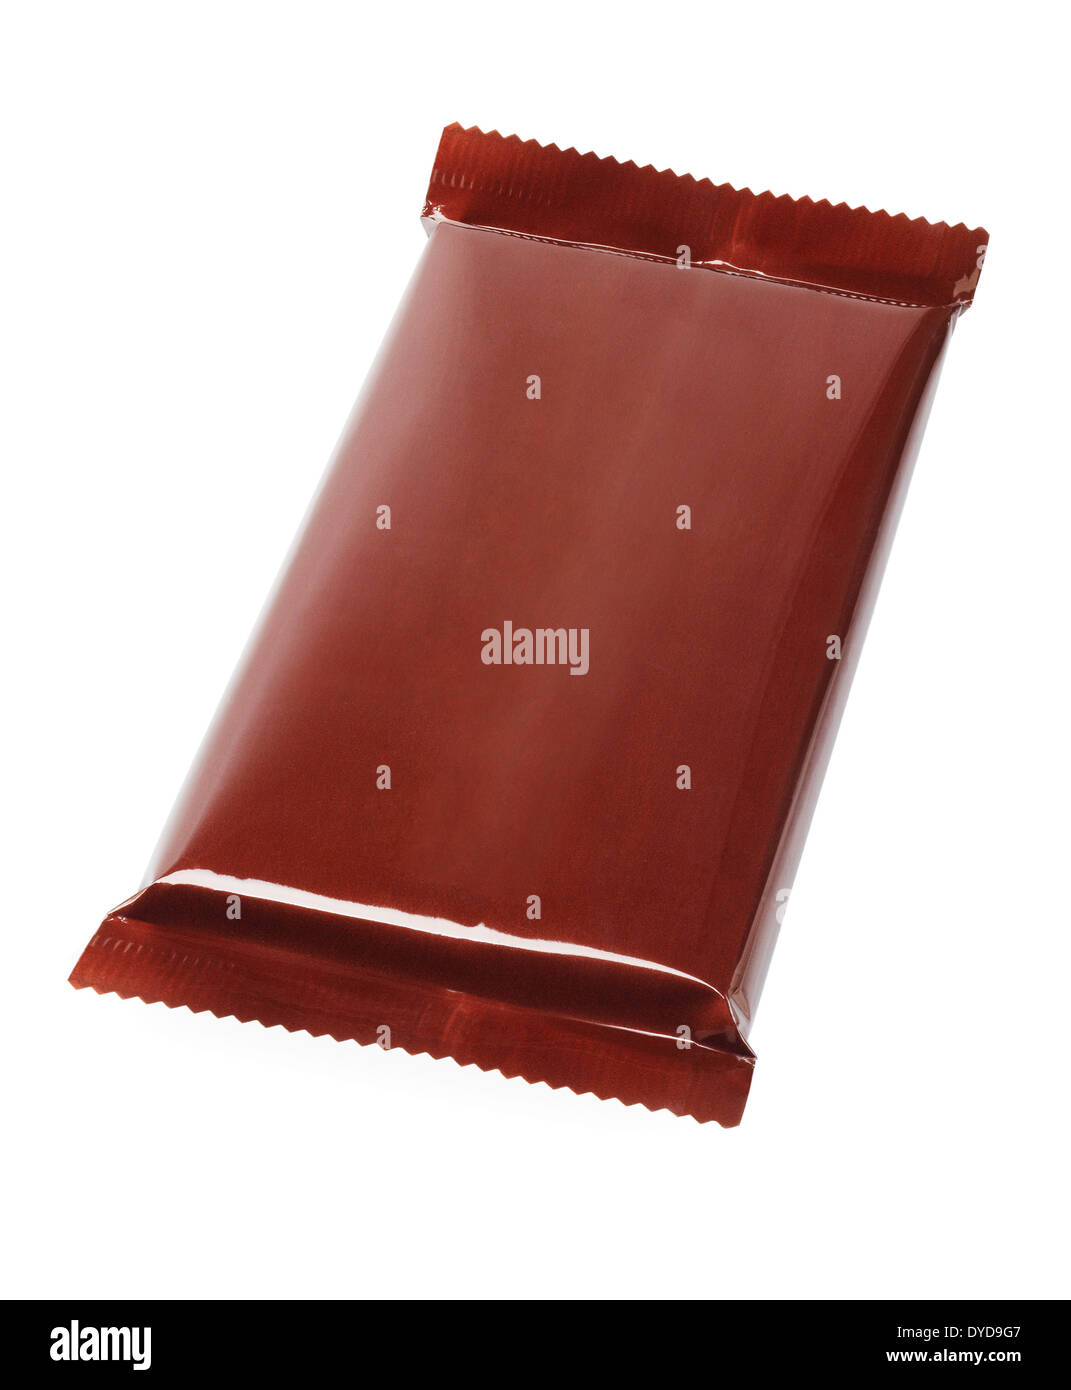 Barre de chocolat en emballage plastique sur fond blanc Banque D'Images